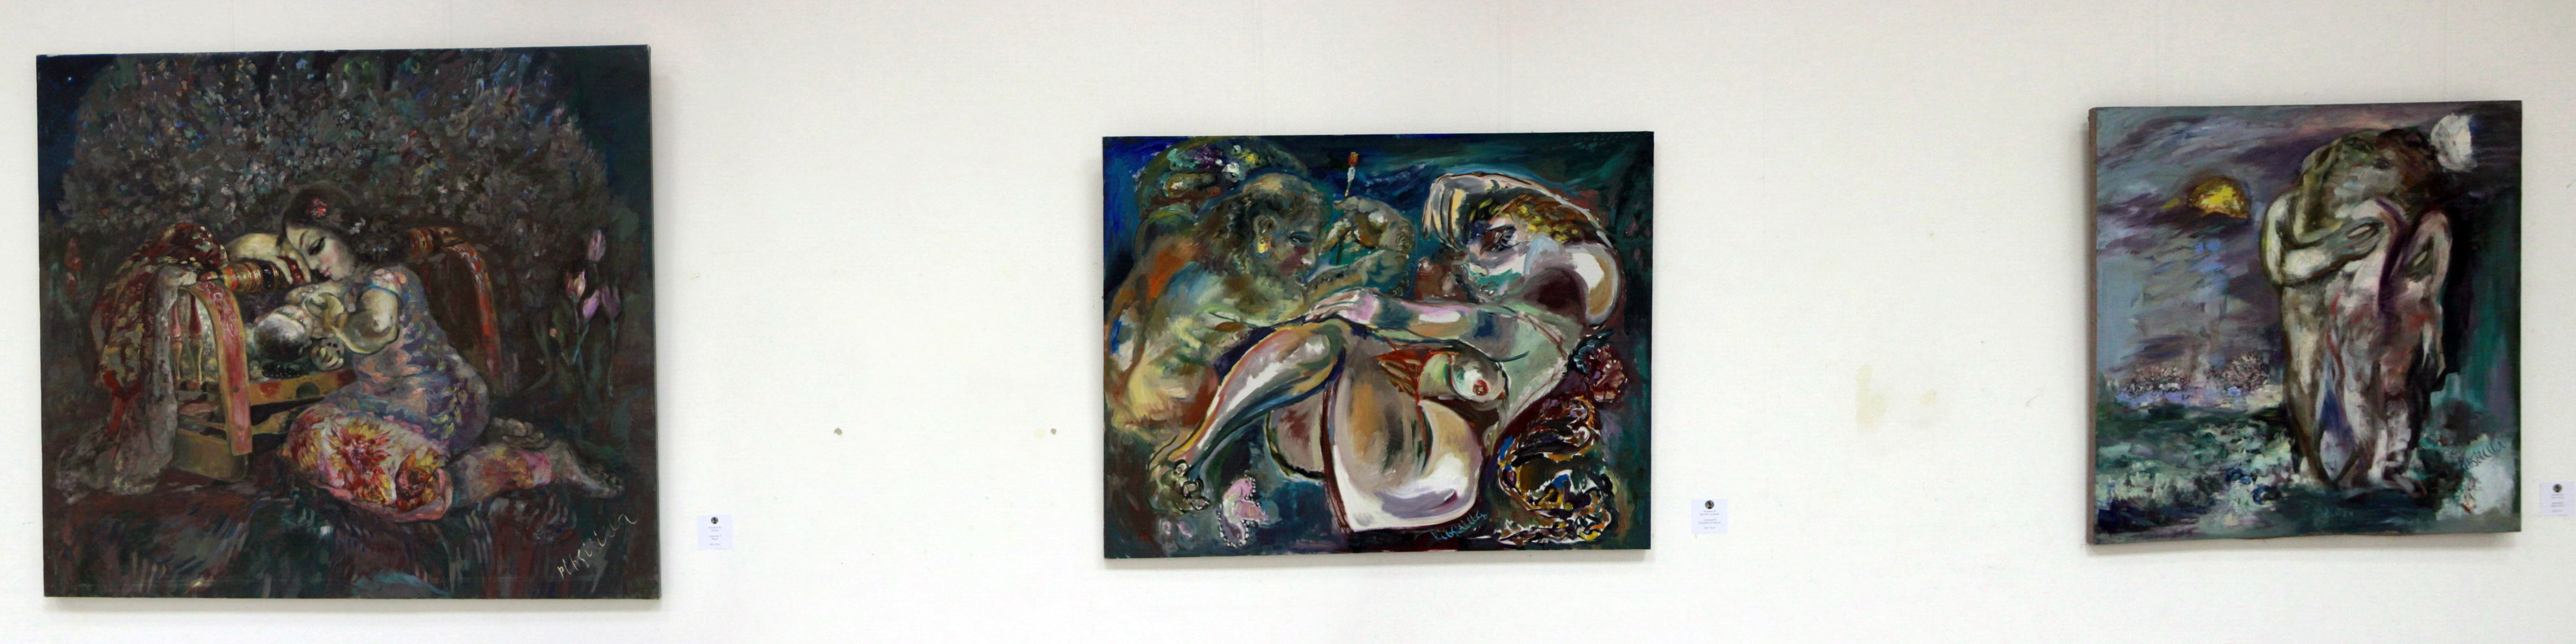 Рихситилла Акрамов. Экспозиция картин.